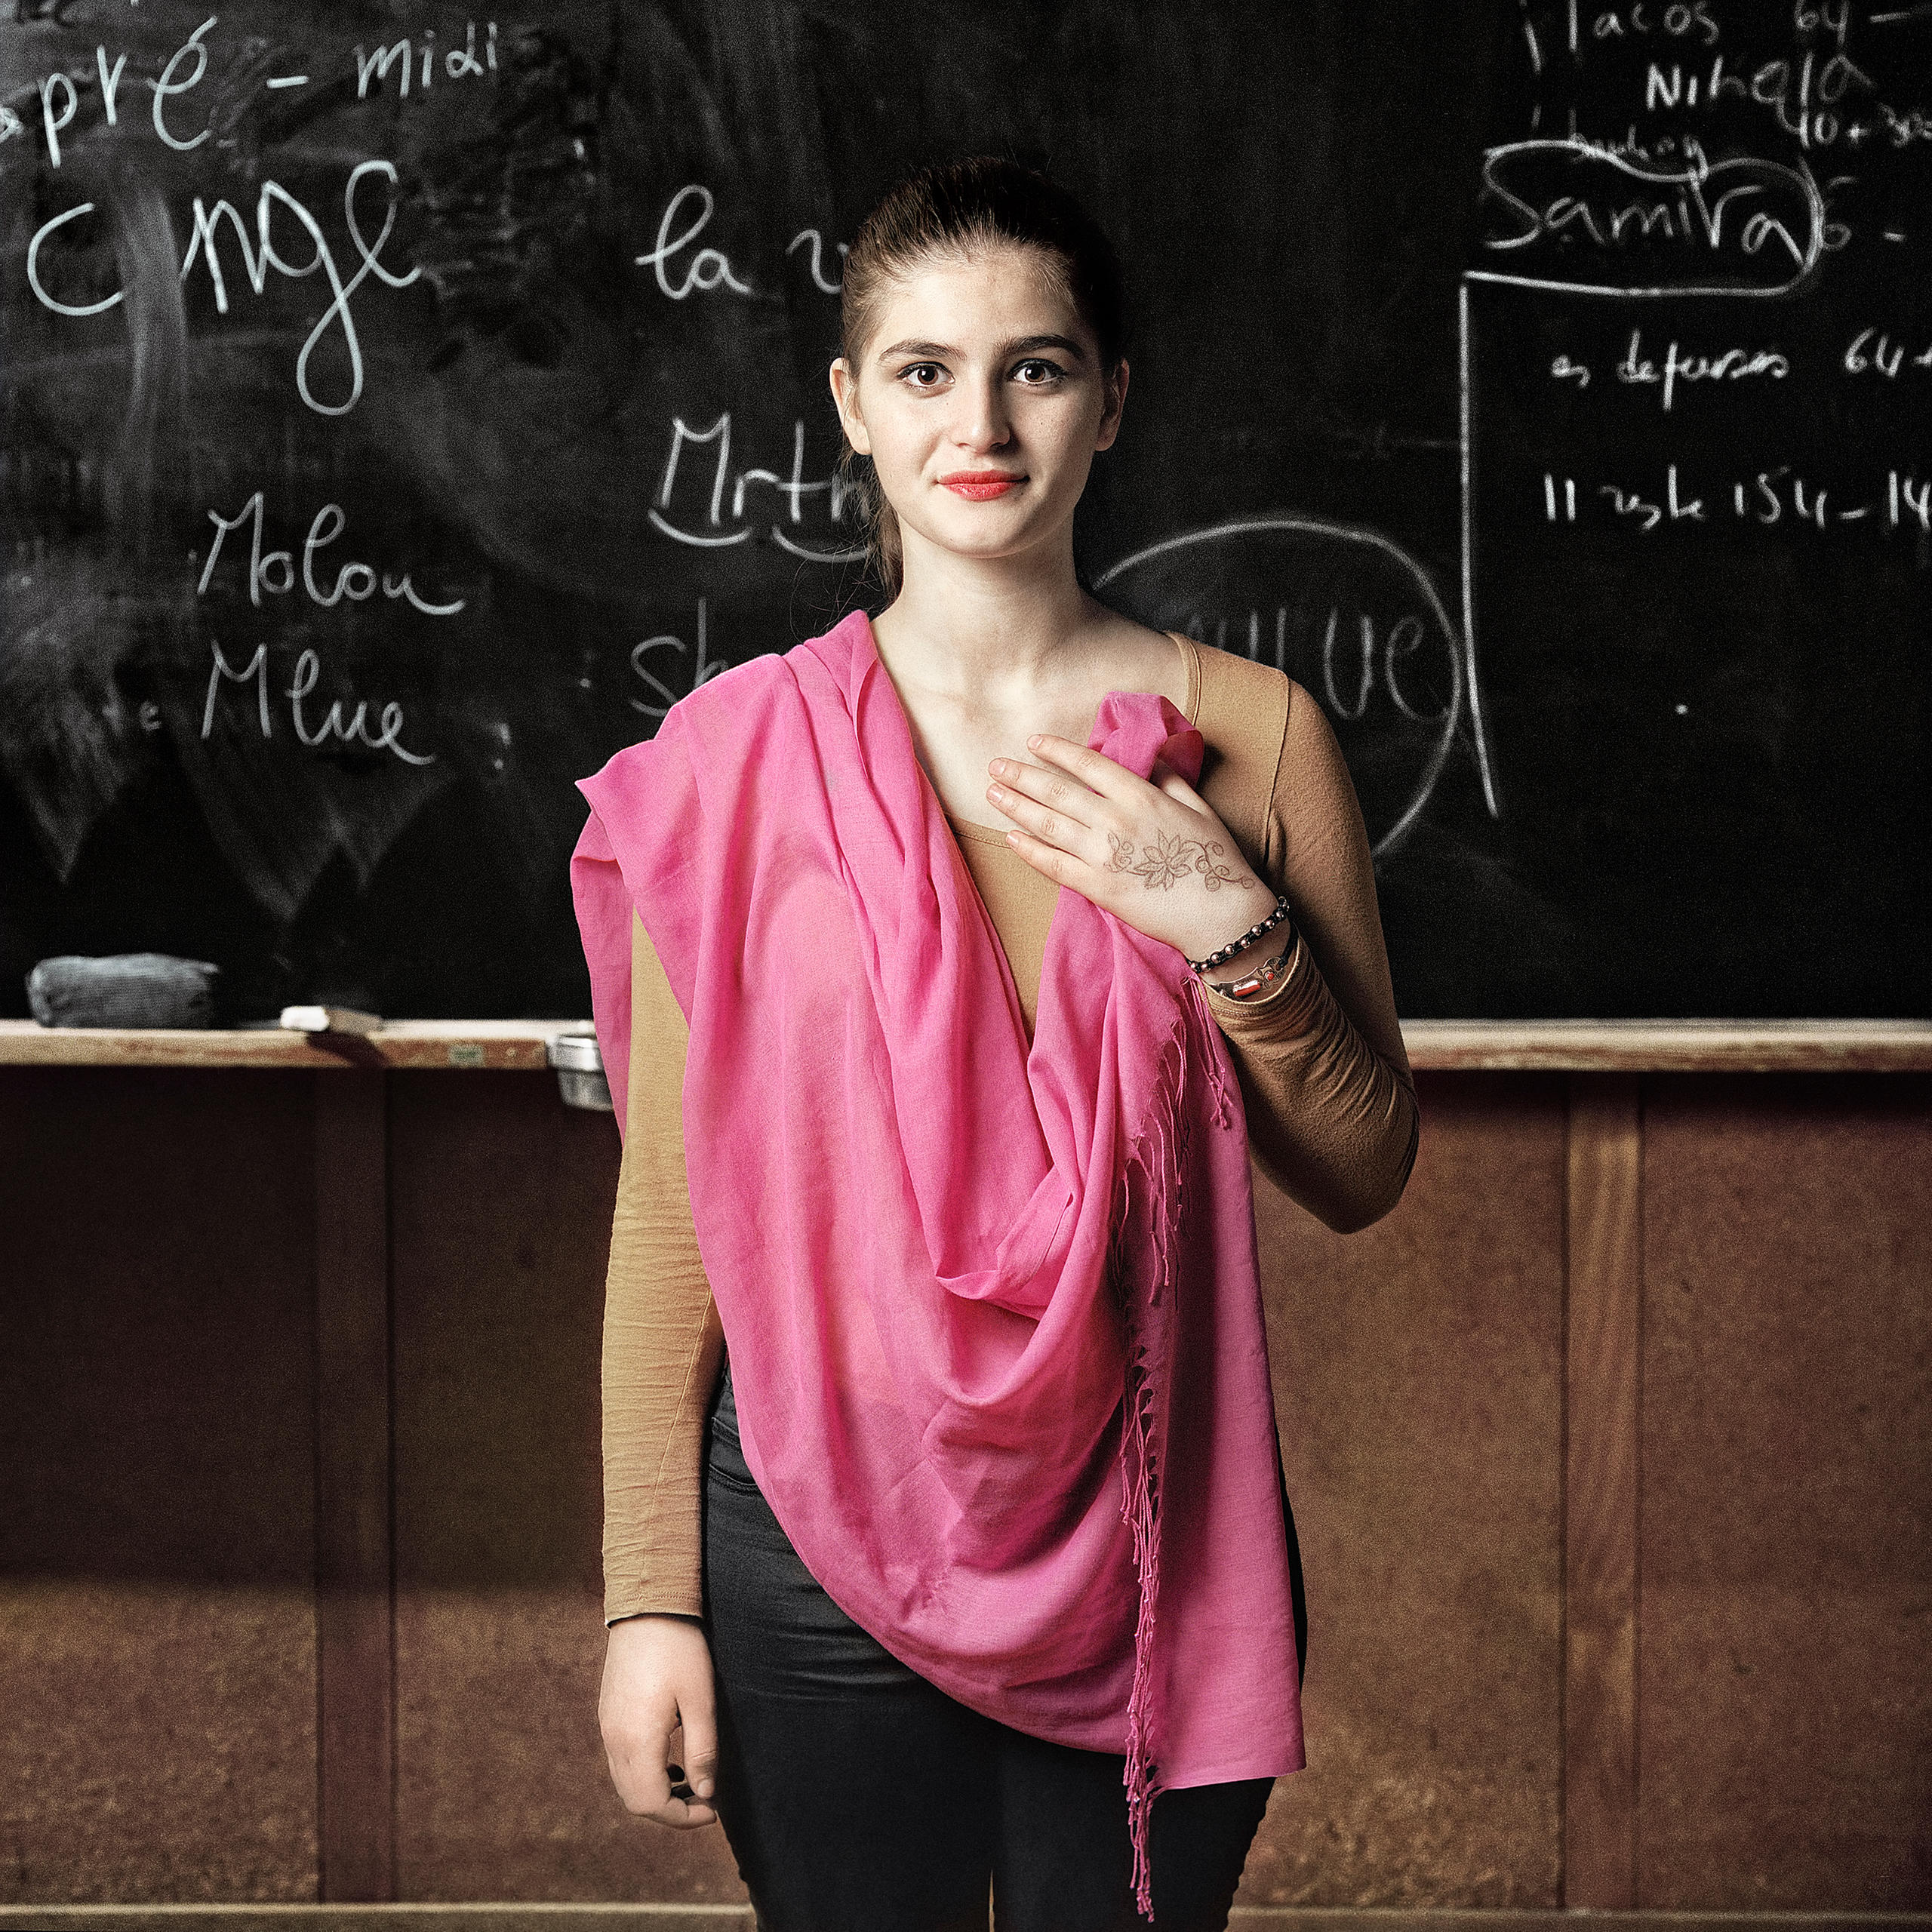 Teenagerin steht vor einer Wandtafel mit rosa Schal